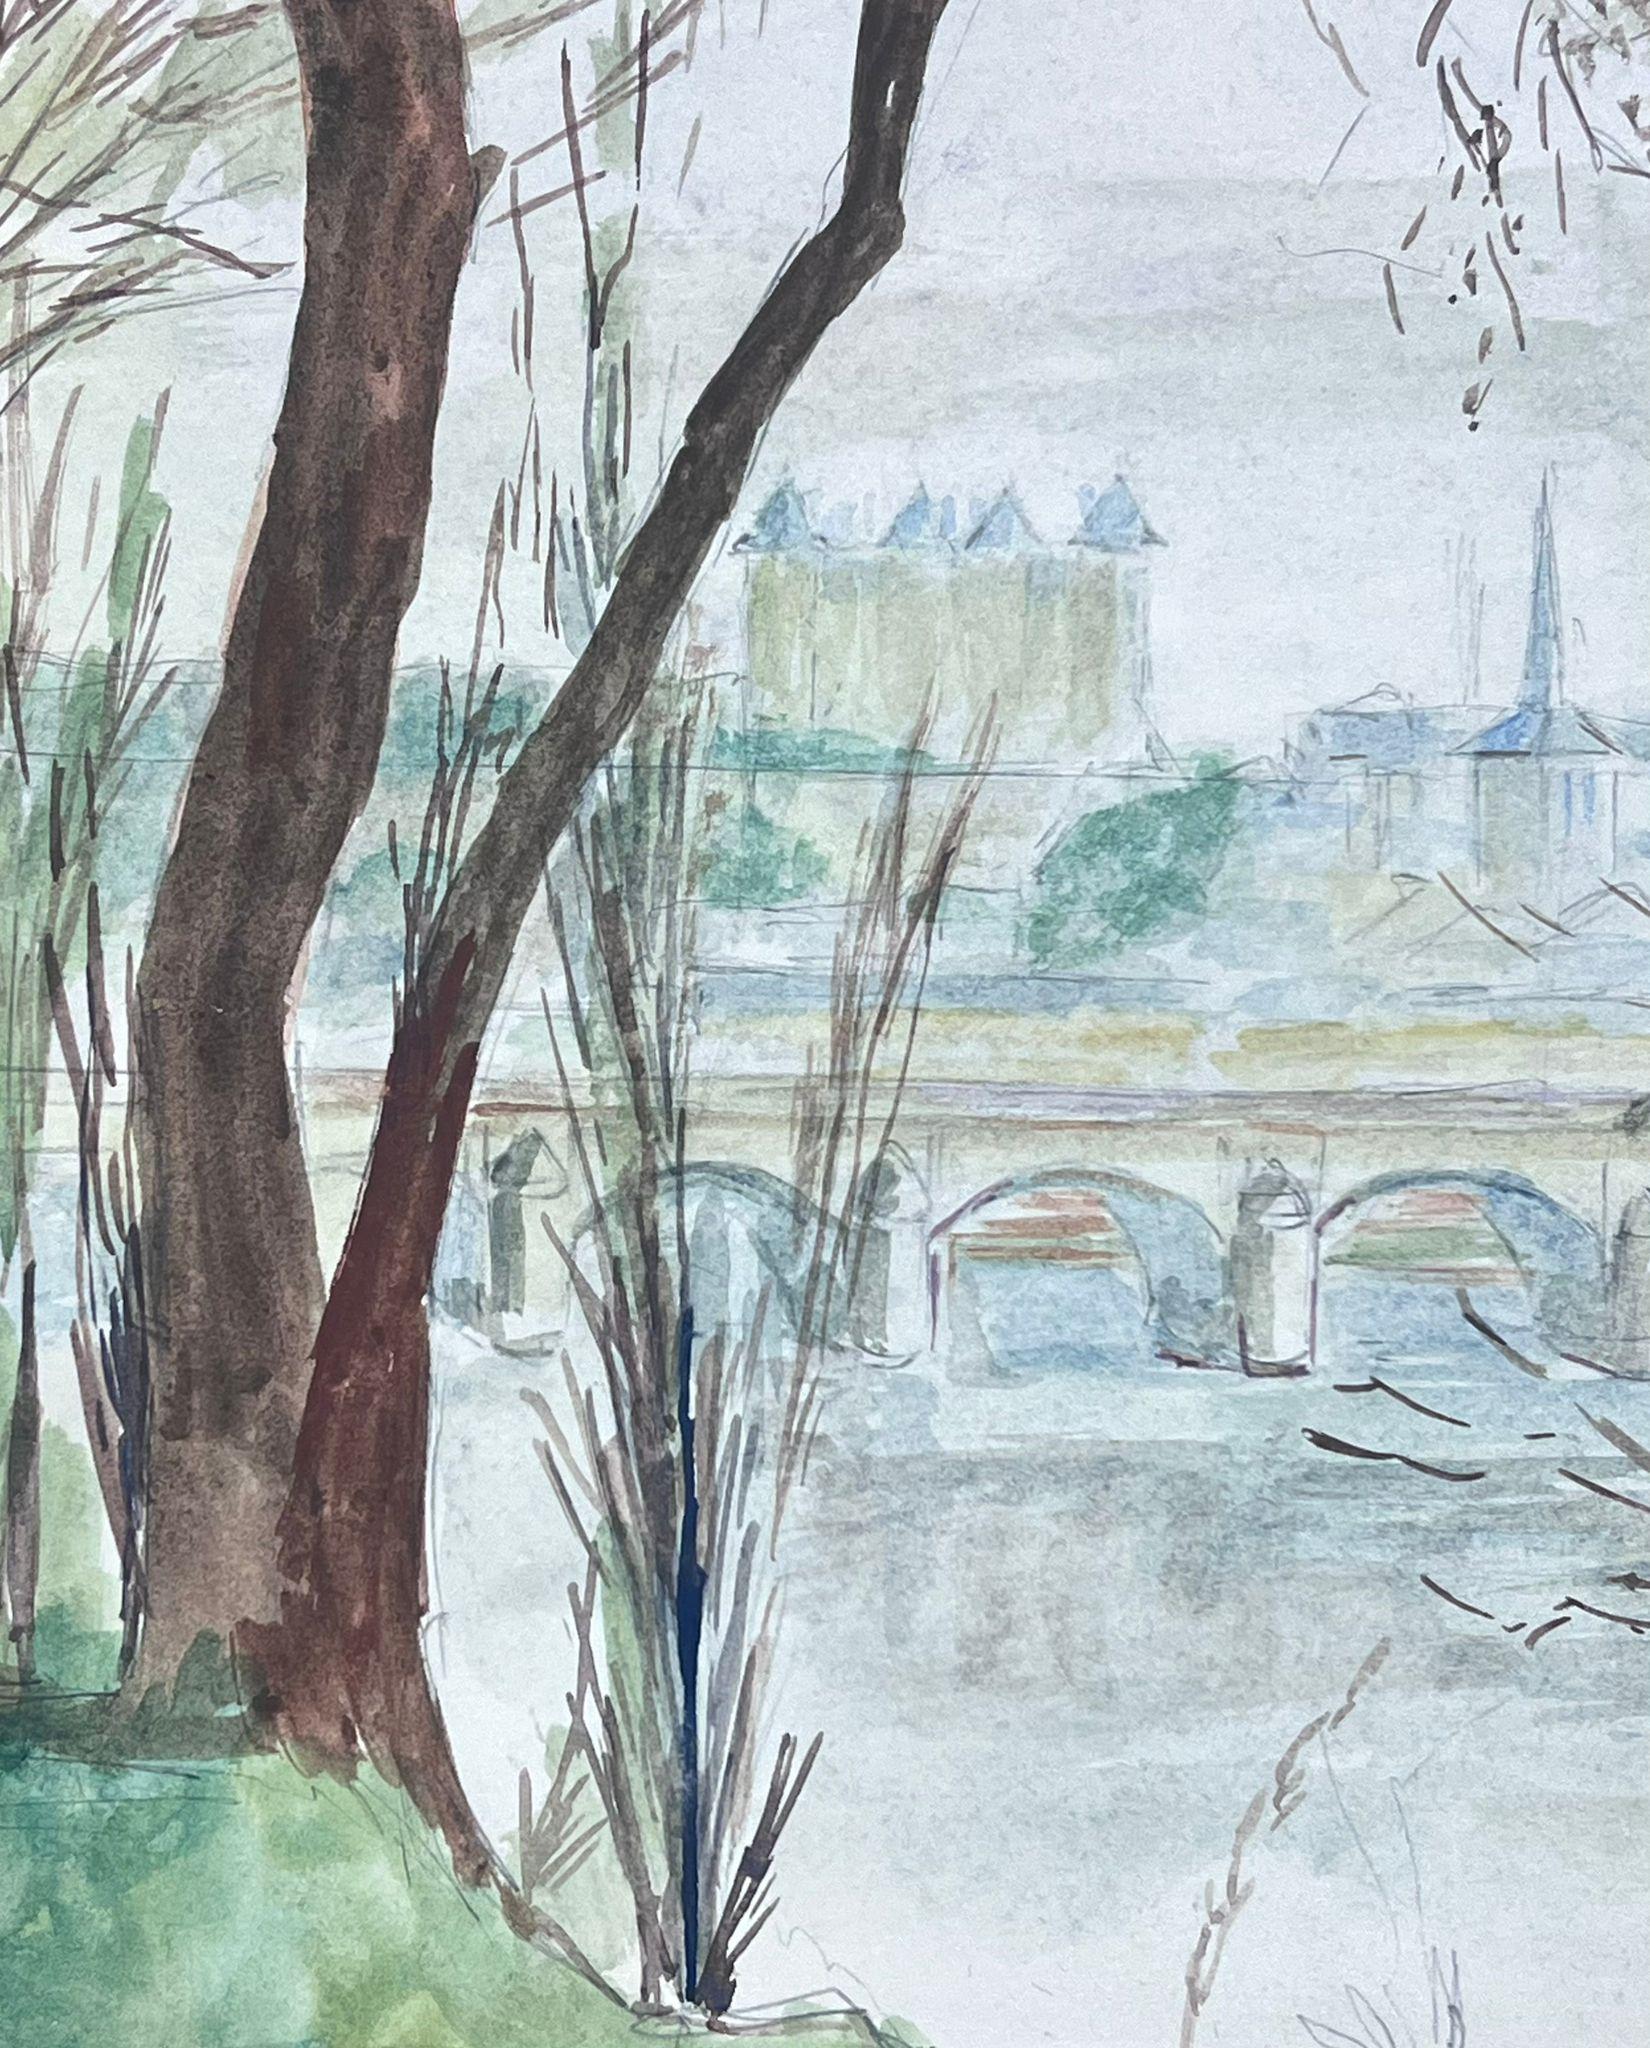 Aquarelle post-impressionniste française du 20e siècle représentant une vue sur la rivière de la ville française - Art de Guy Nicod